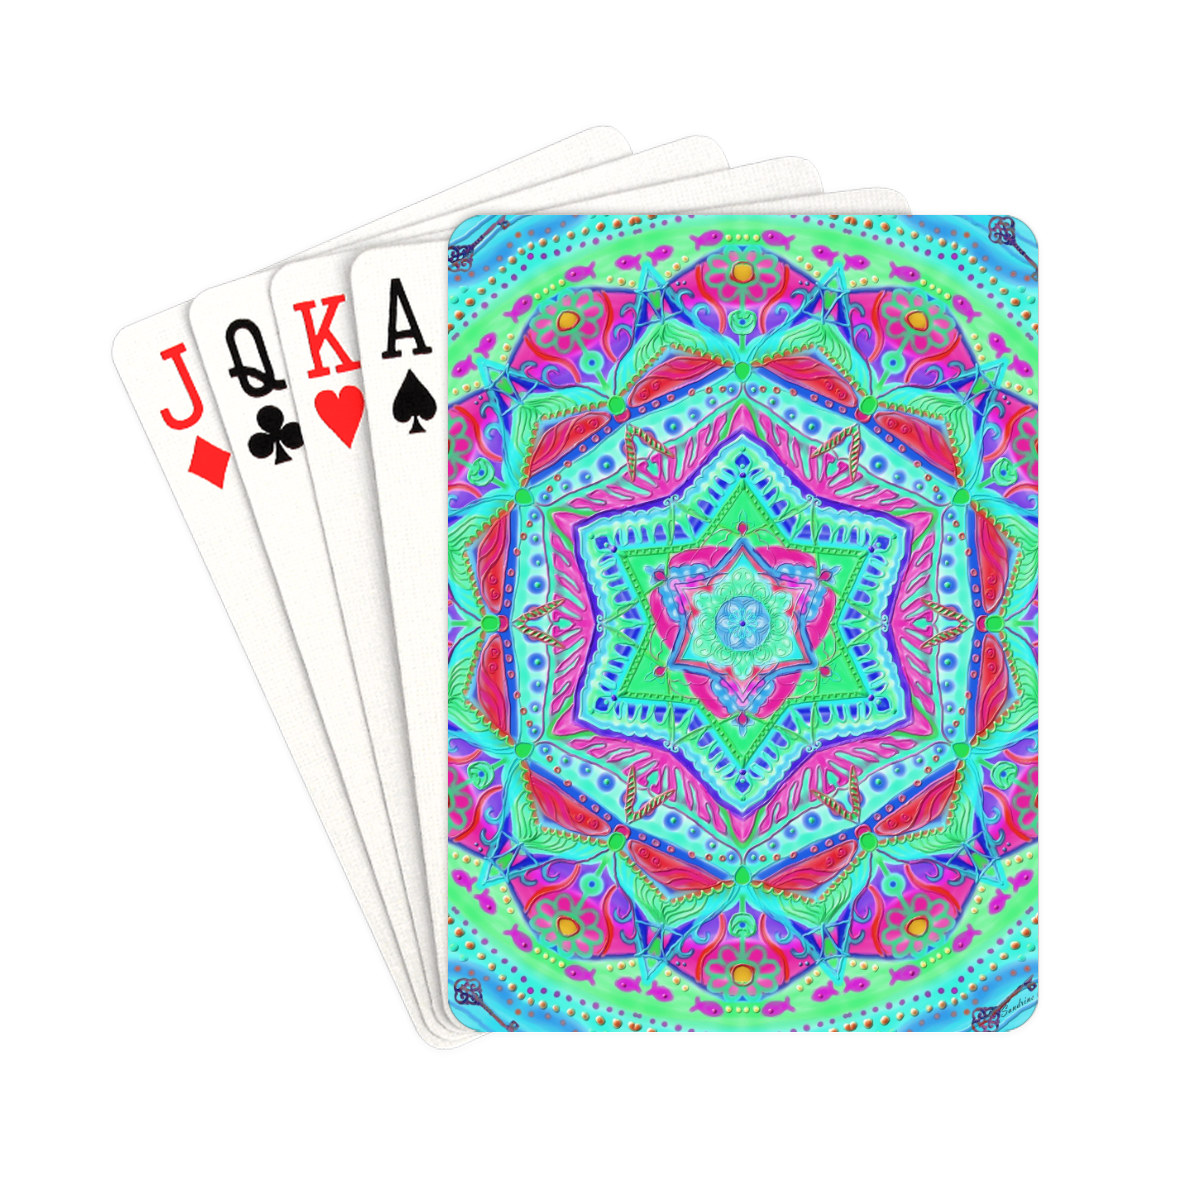 mandala enfance 2 Playing Cards 2.5"x3.5"